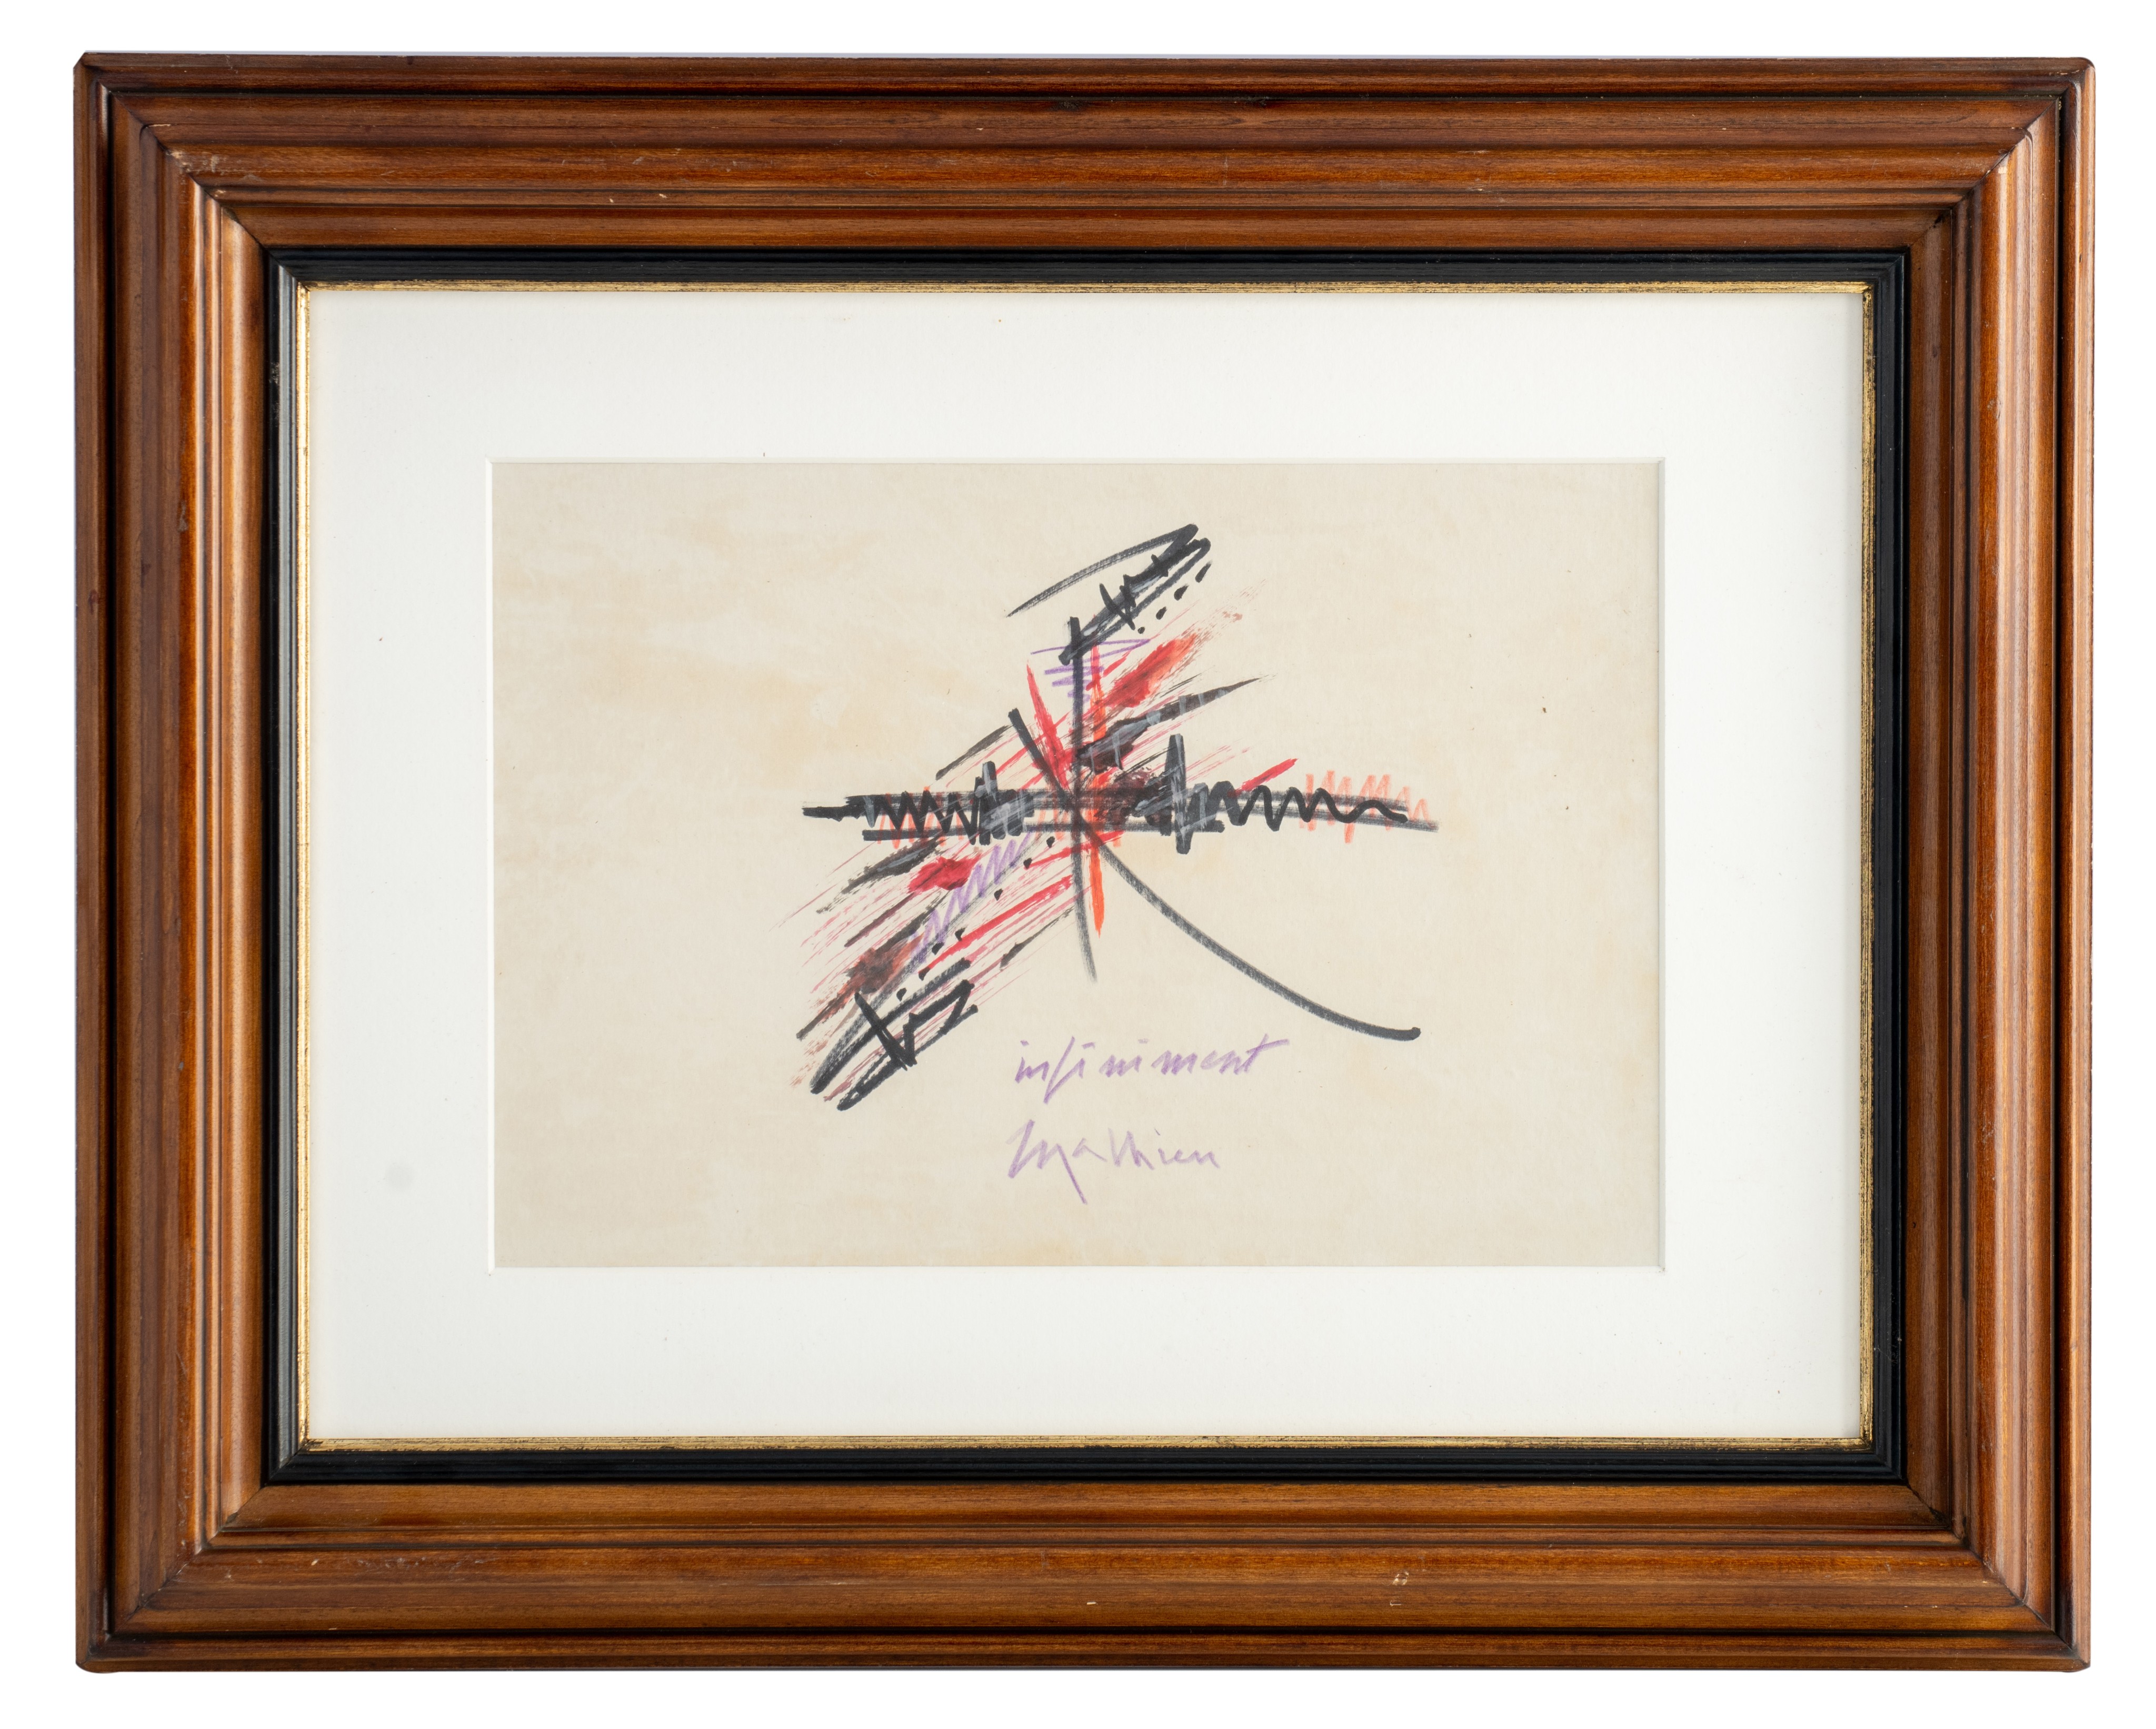 Georges Mathieu (1921-2012), 'Infiniment', felt pen on paper, 20 x 29 cm - Bild 3 aus 4